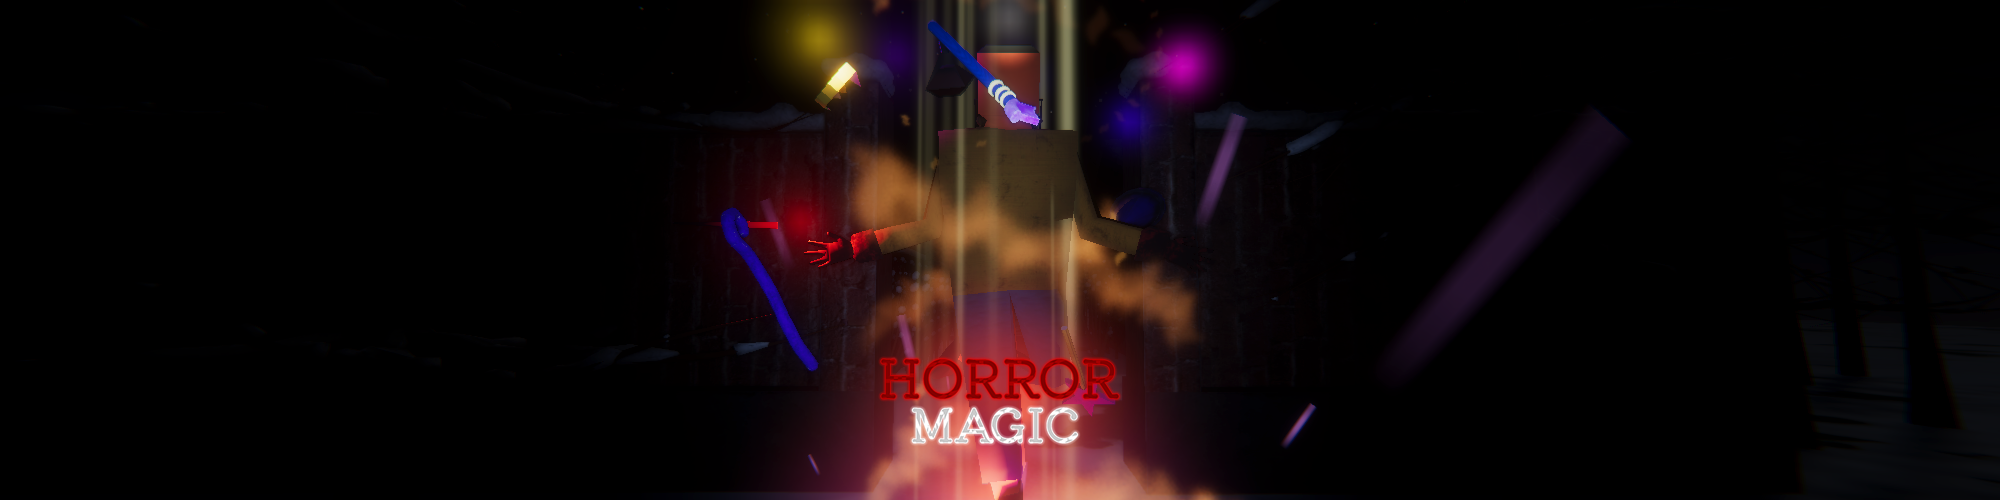 Horror Magic